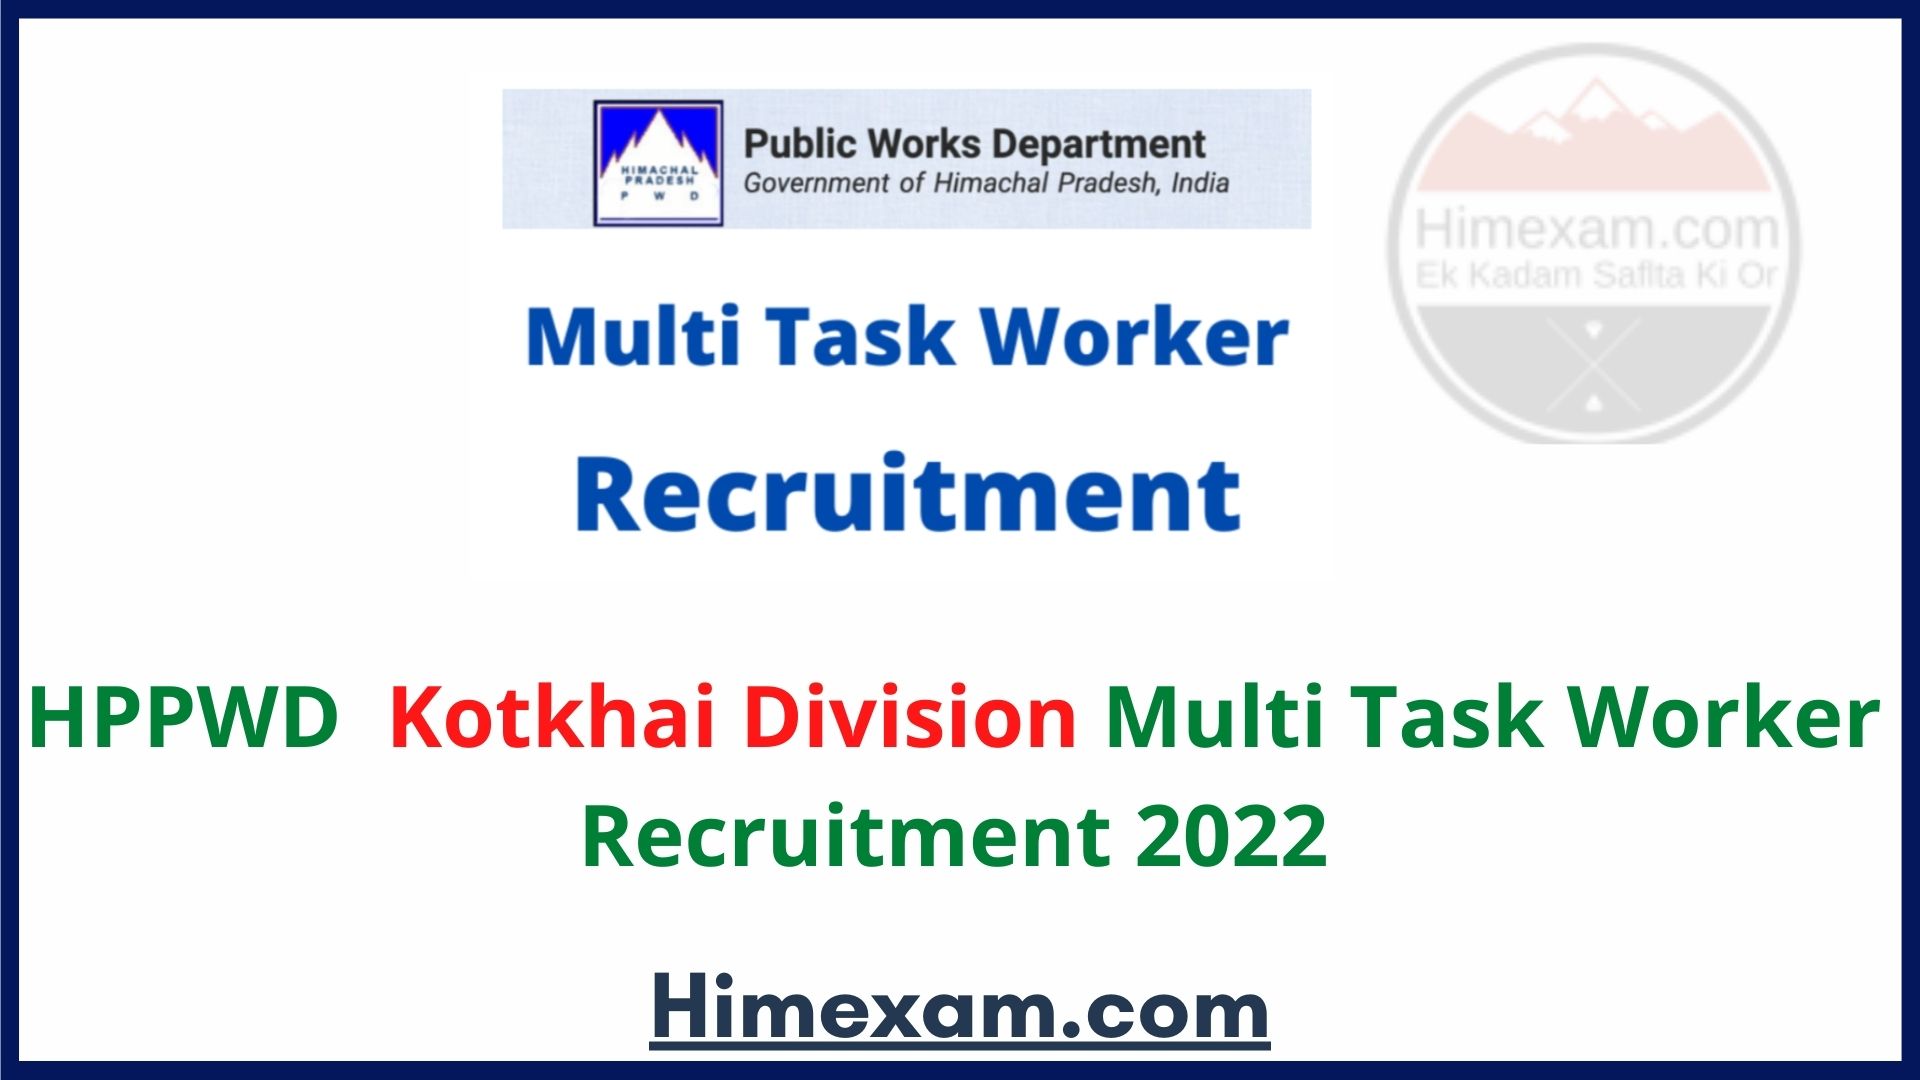 HPPWD Kotkhai Division Multi Task Worker Recruitment 2022